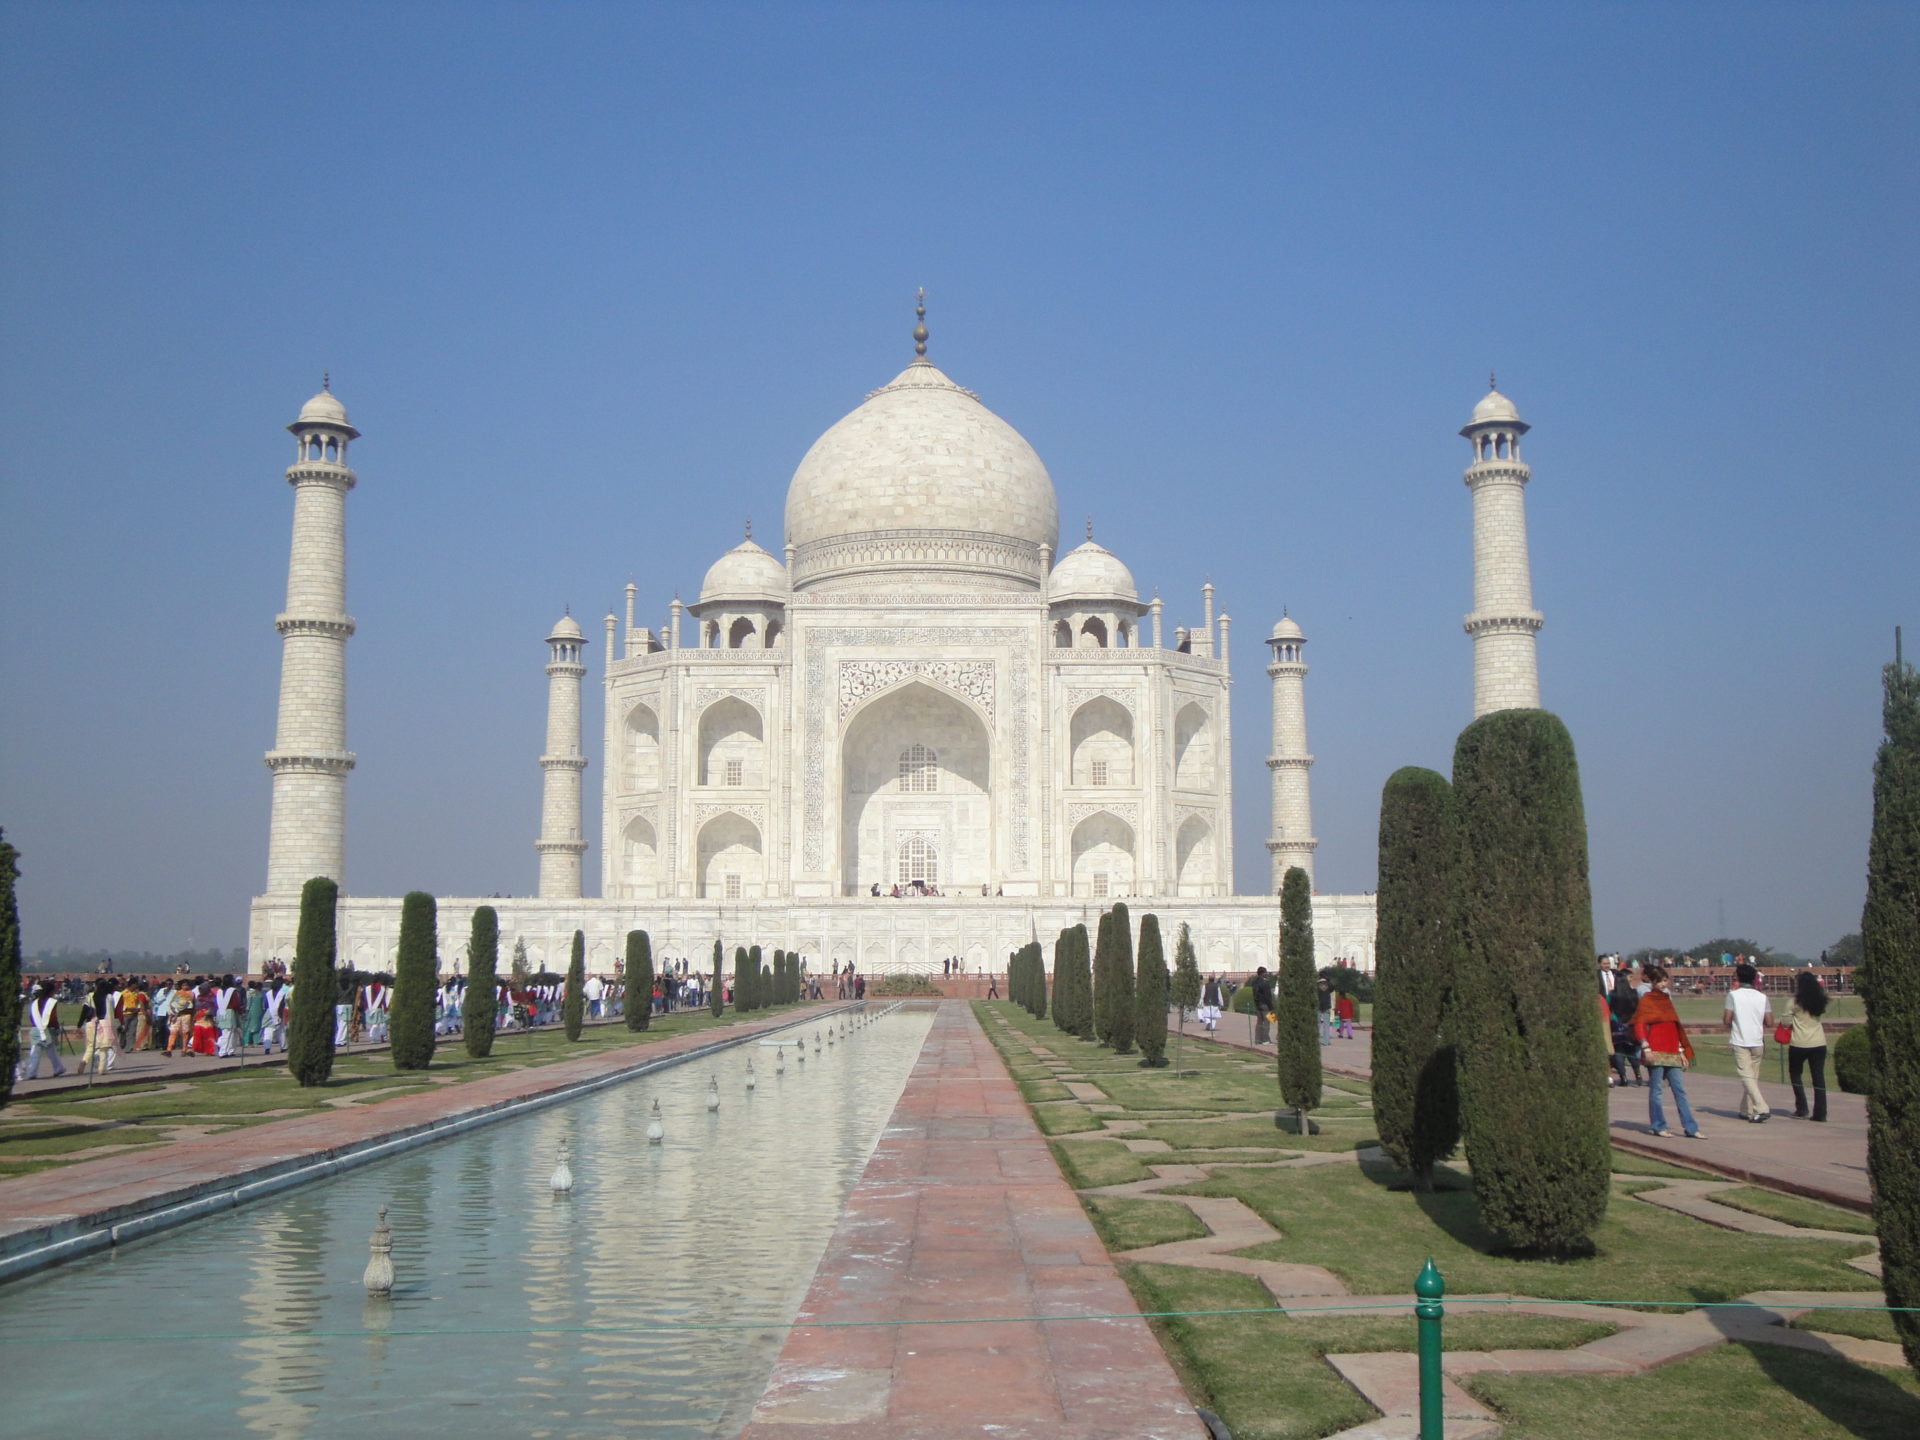 Das Taj Mahal ist eines der bekanntesten Sehenswürdigkeiten in Indien